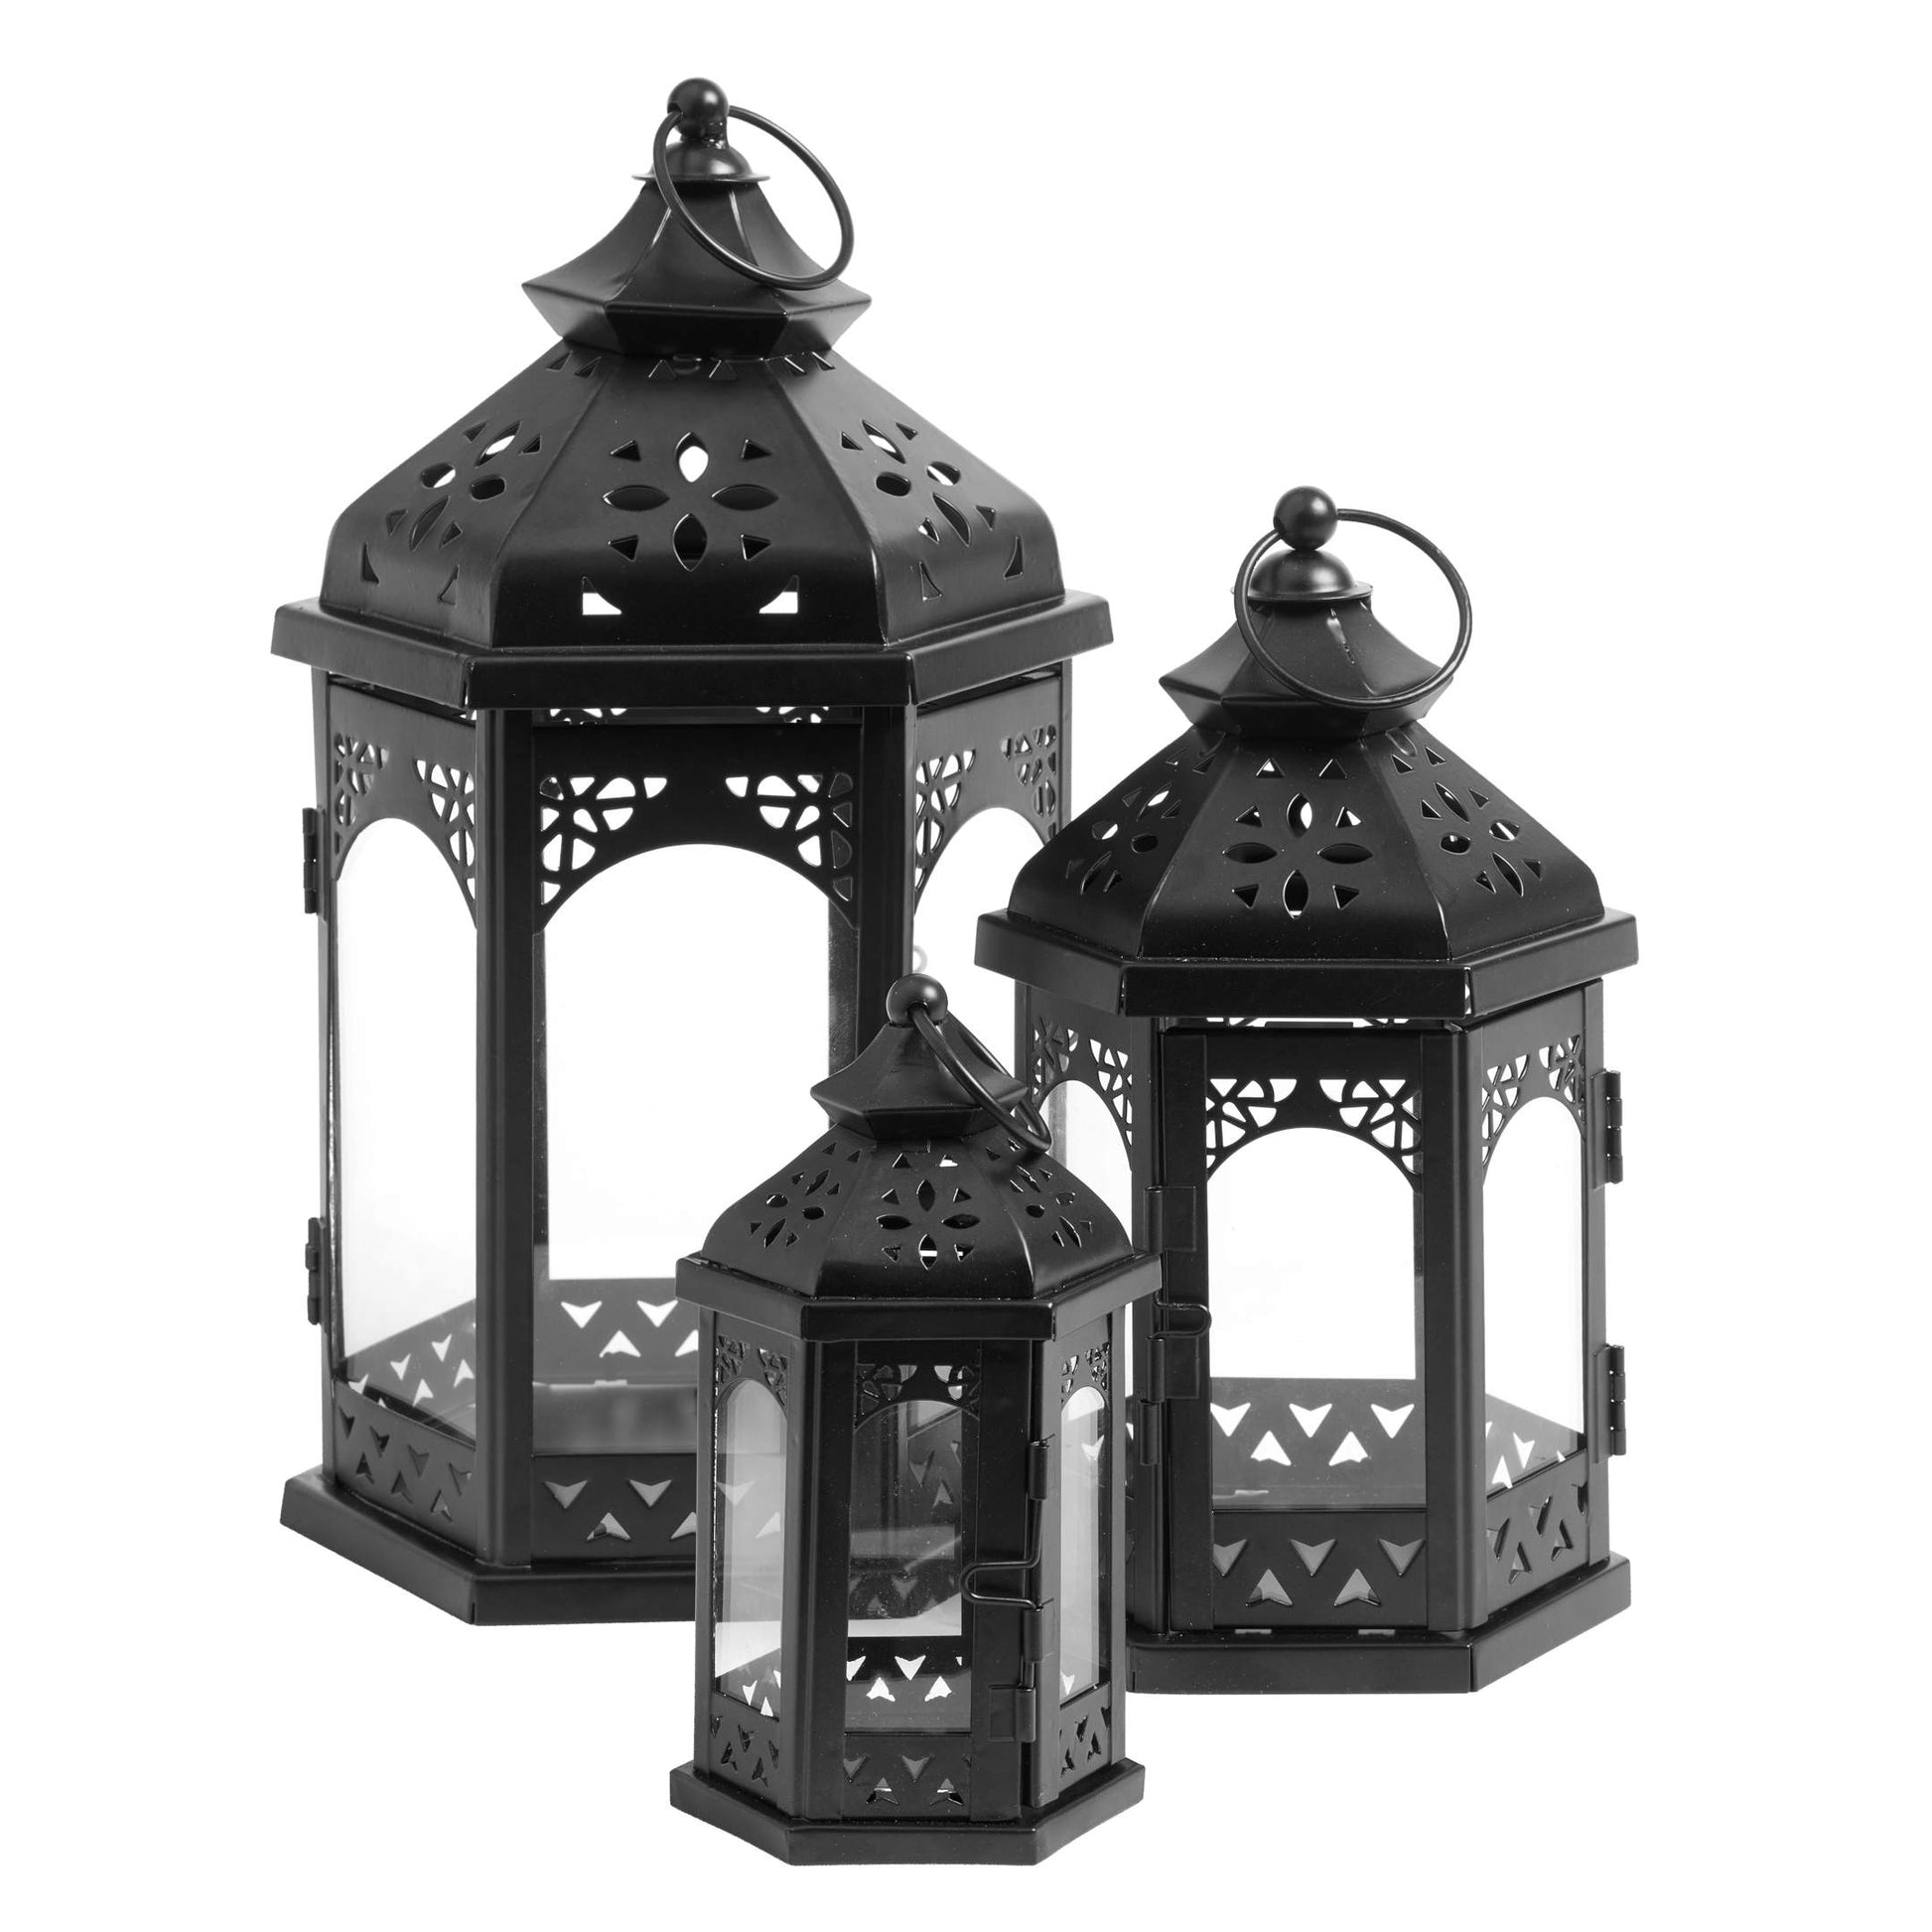 Trojica čiernych lampášov z kovu v troch rôznych veľkostiach Sahara Trio bez sviečok. Vhodné pre bežné alebo LED valcové sviečky.